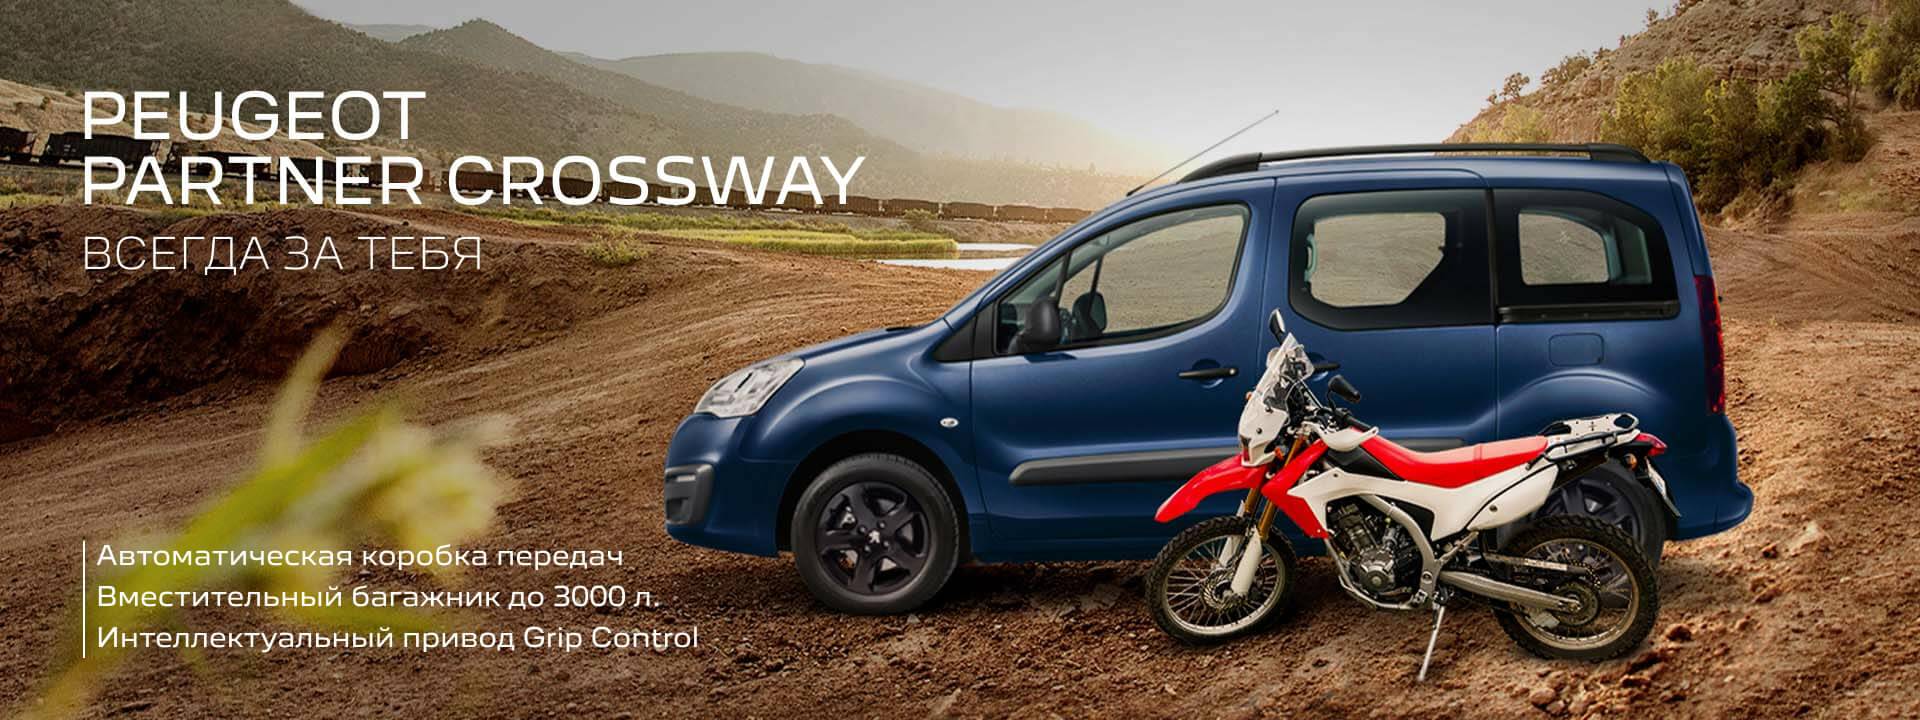 Peugeot Partner Crossway